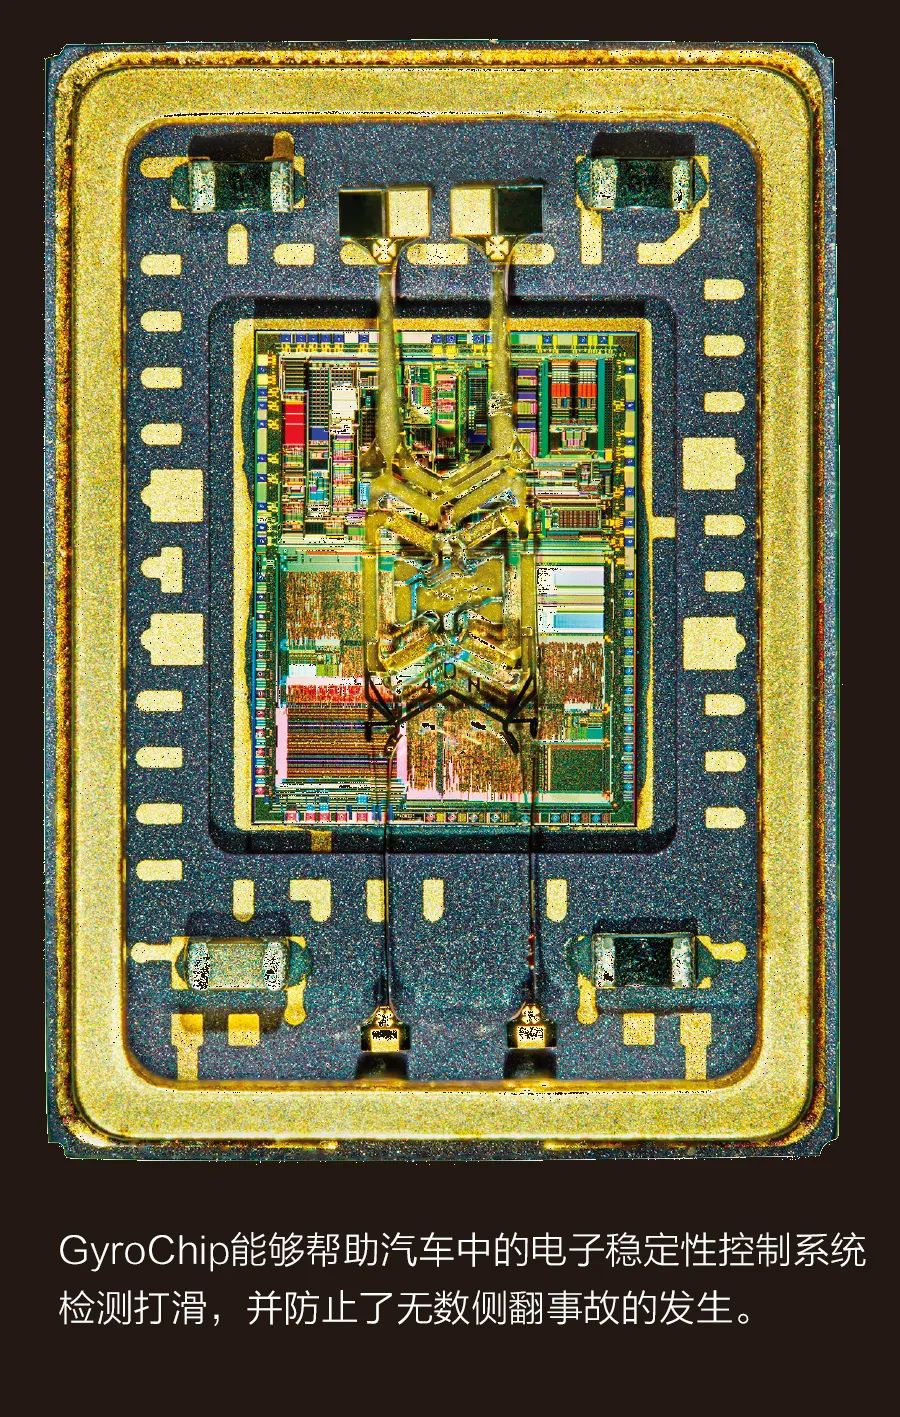 浅谈救生传感器之惯性陀螺芯片技术,340eb818-0c01-11ed-ba43-dac502259ad0.jpg,第2张